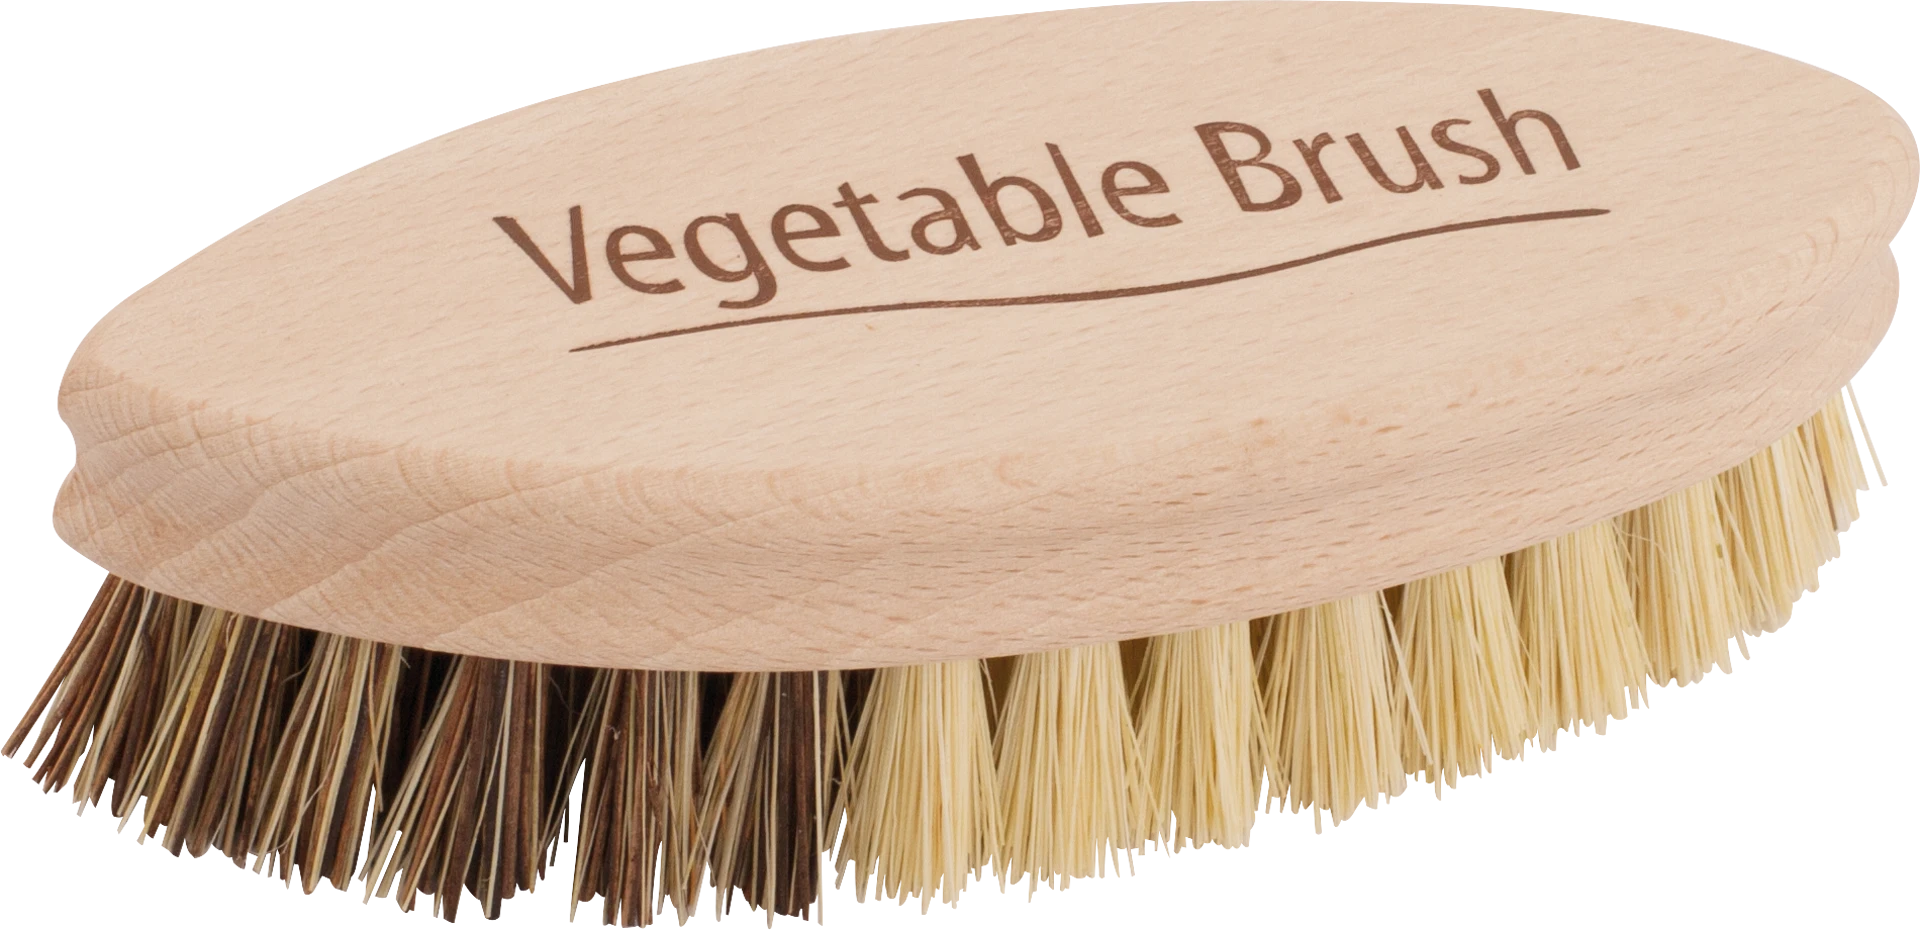 Vegetable Brush, single